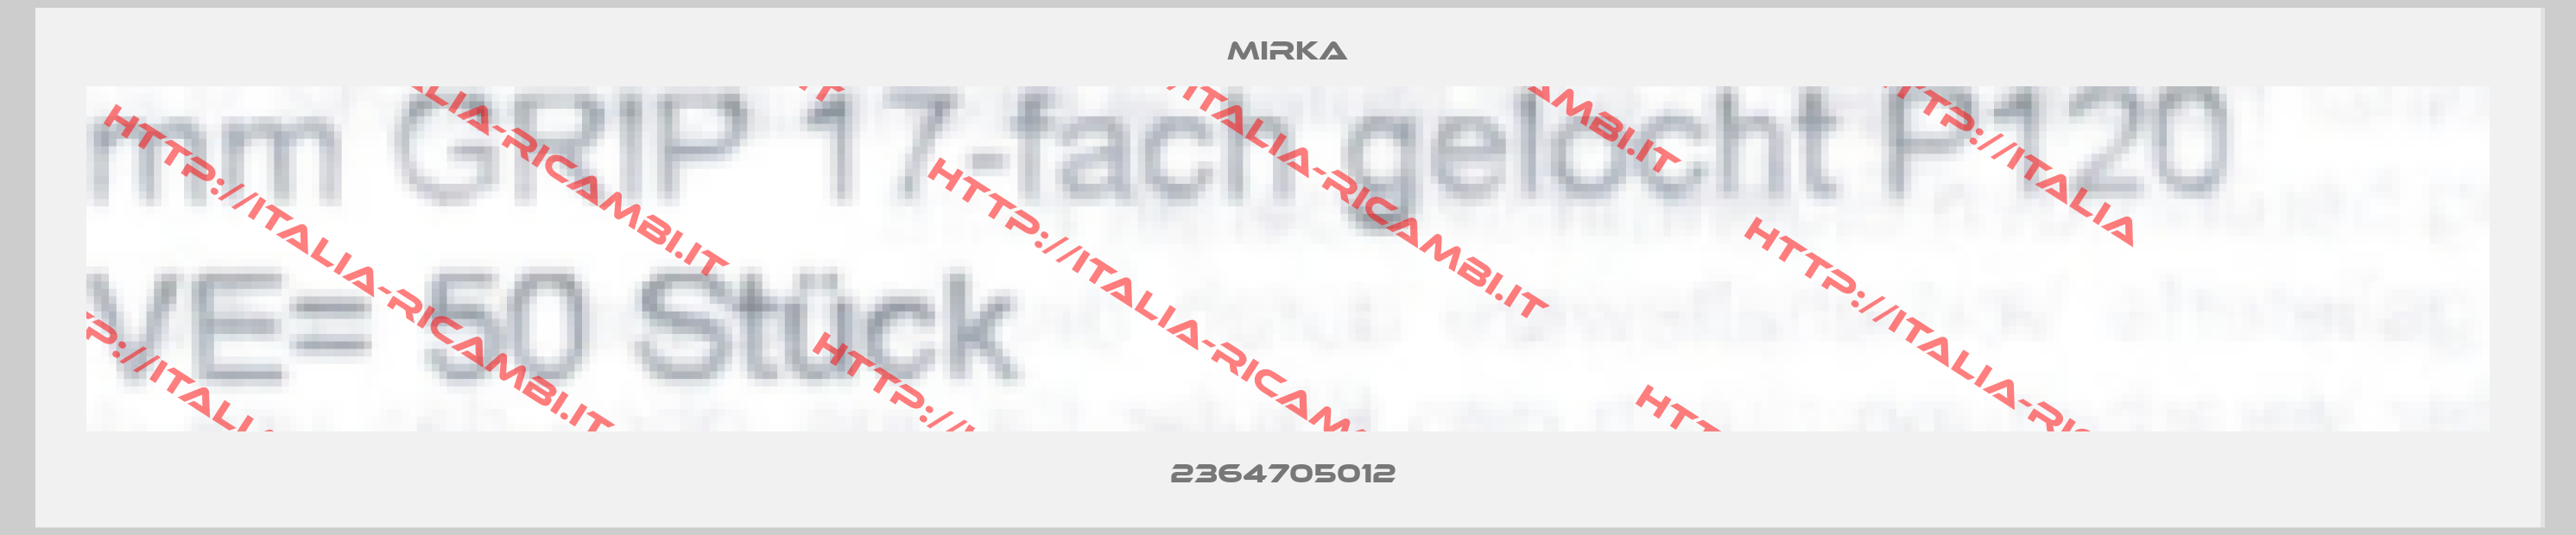 Mirka-2364705012 